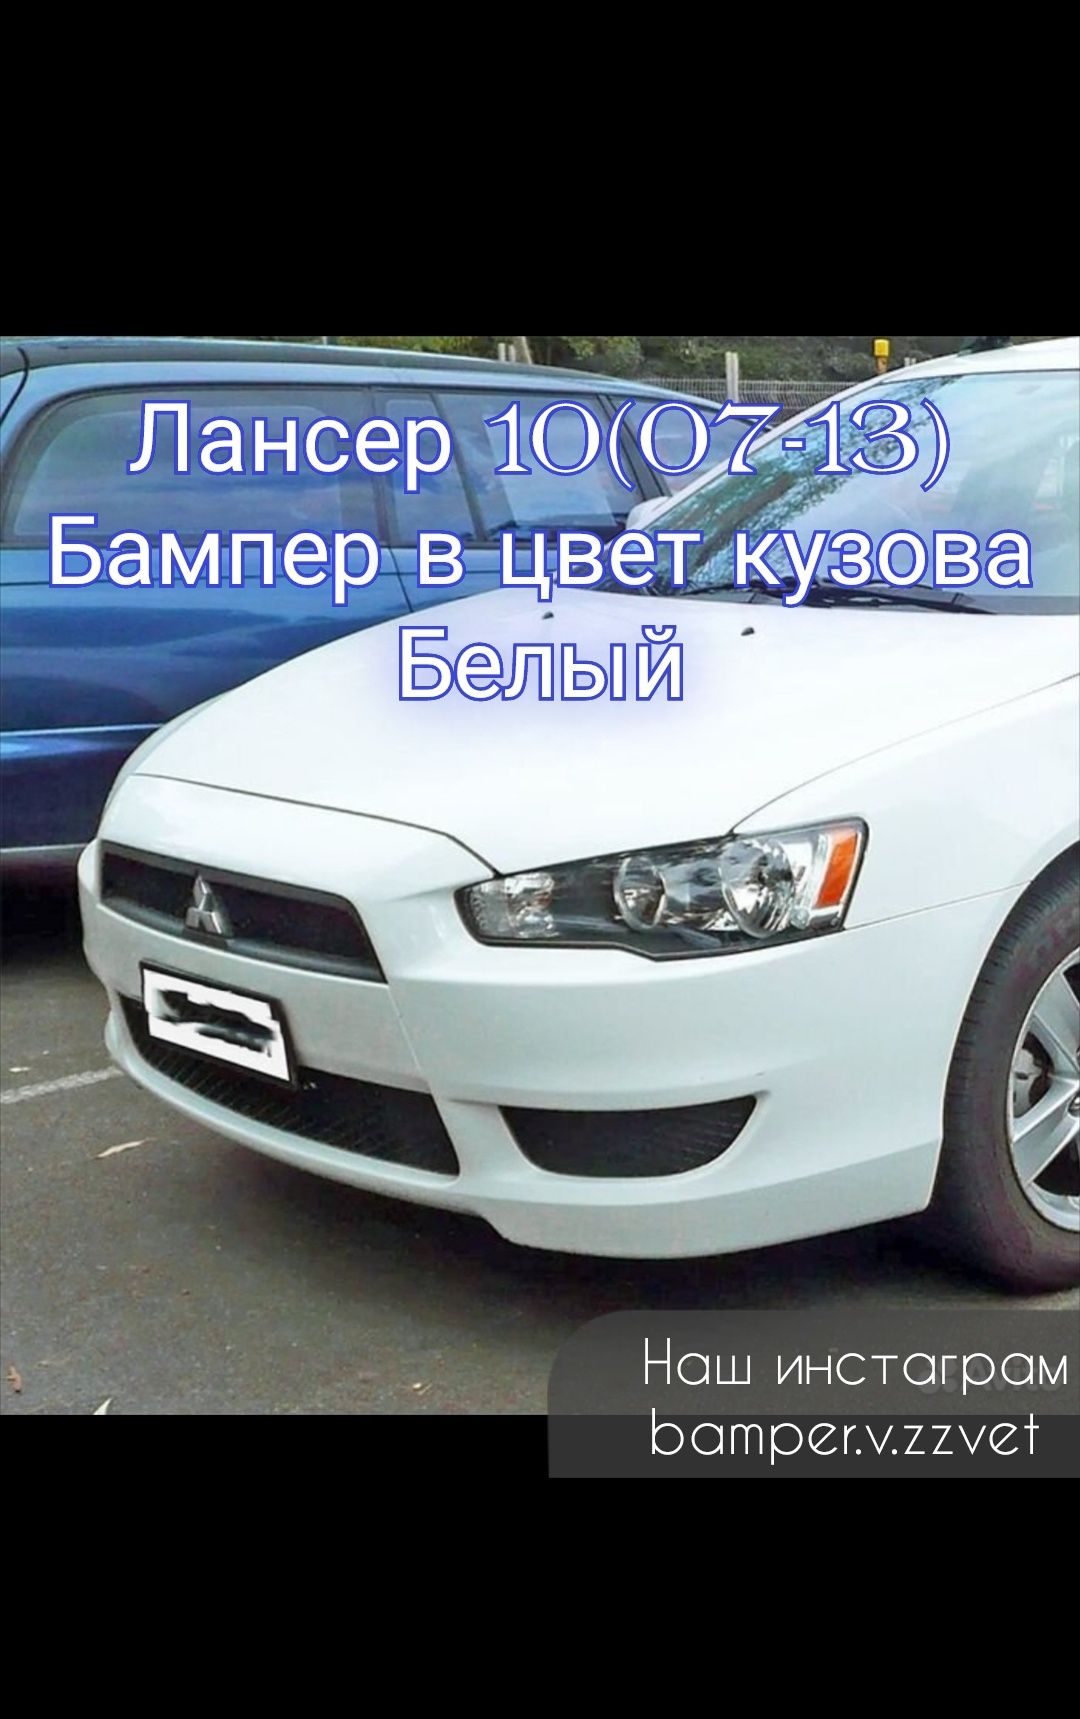 Бампер в цвет Кузова на Лансер 10 (07-1) Петропавловск1